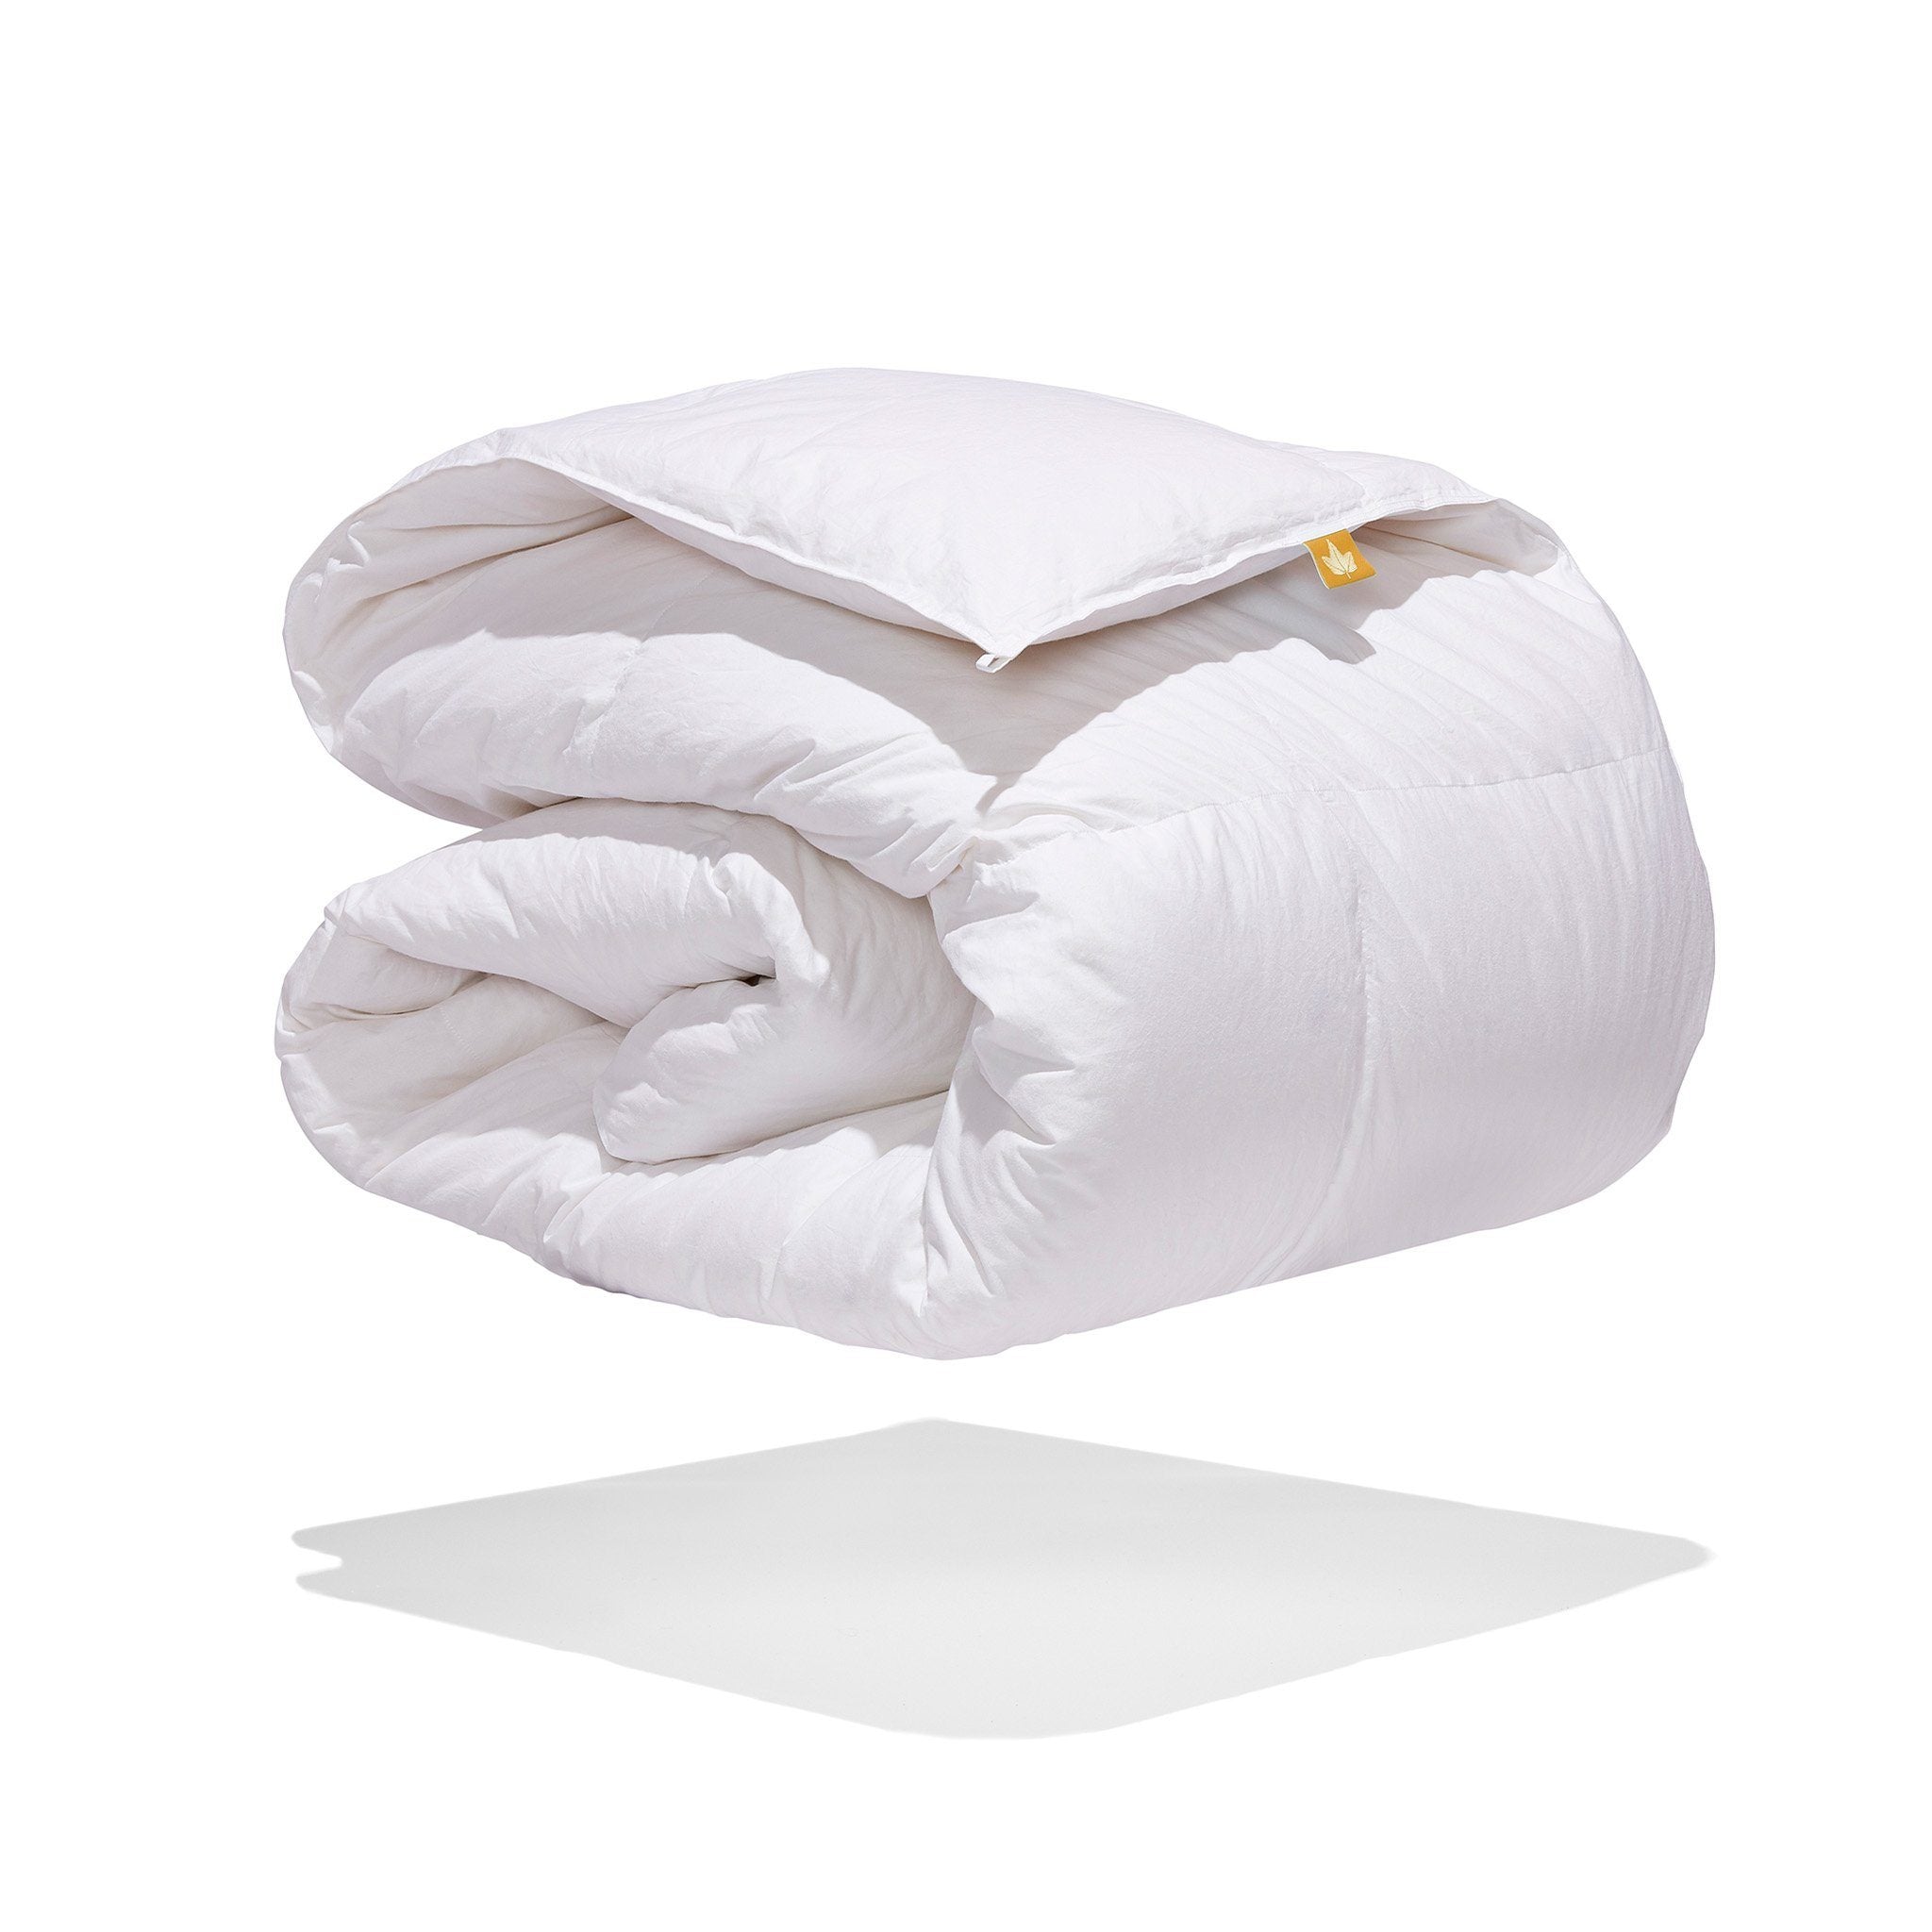 C&W White Goose Down Comforter King Size Duvet Insert, Down Duvet